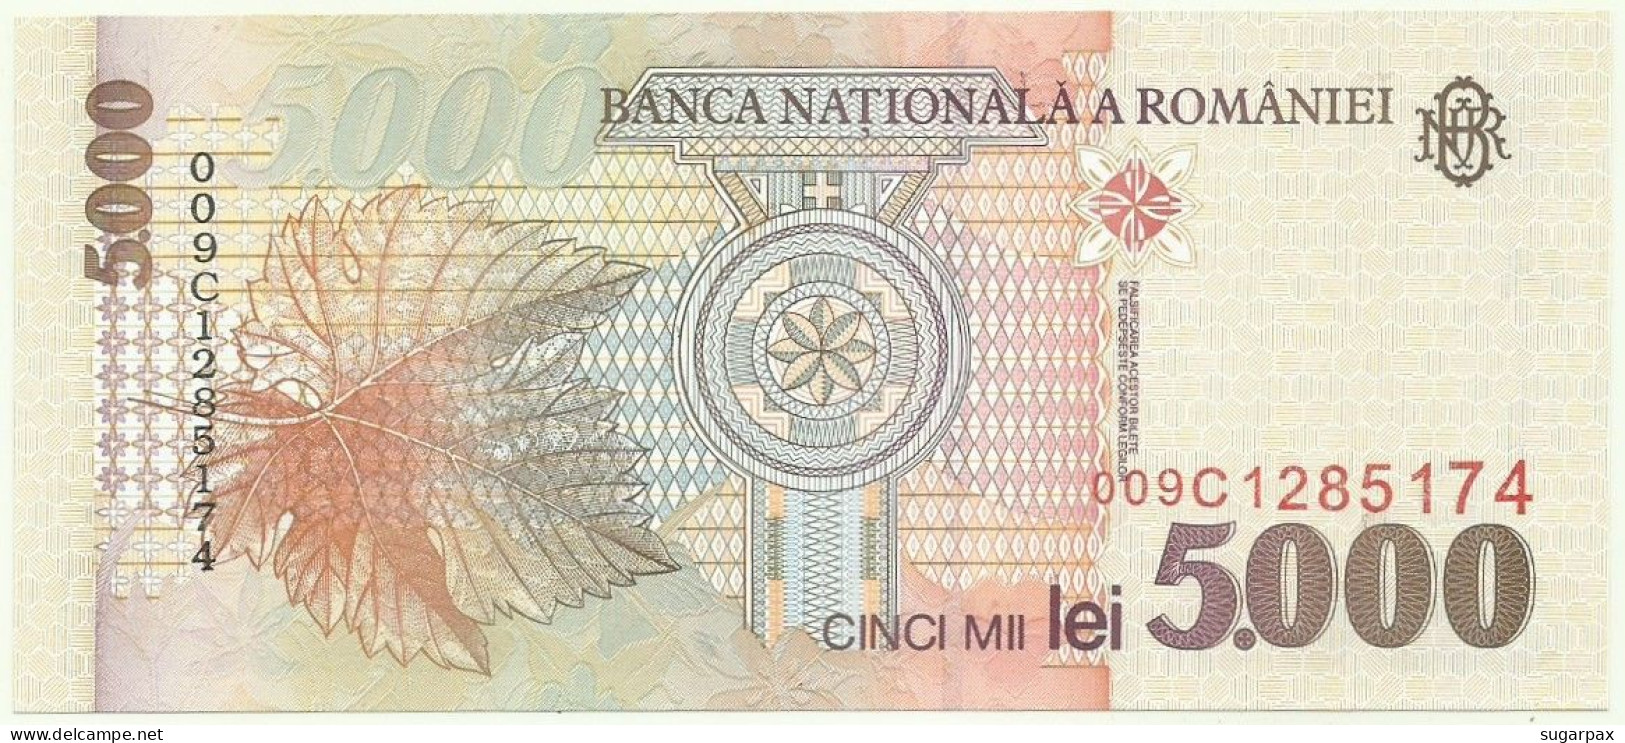 ROMANIA - 5.000 Lei - 1998 - Pick 107 - Unc. - Série 009C - 5000 - Rumänien